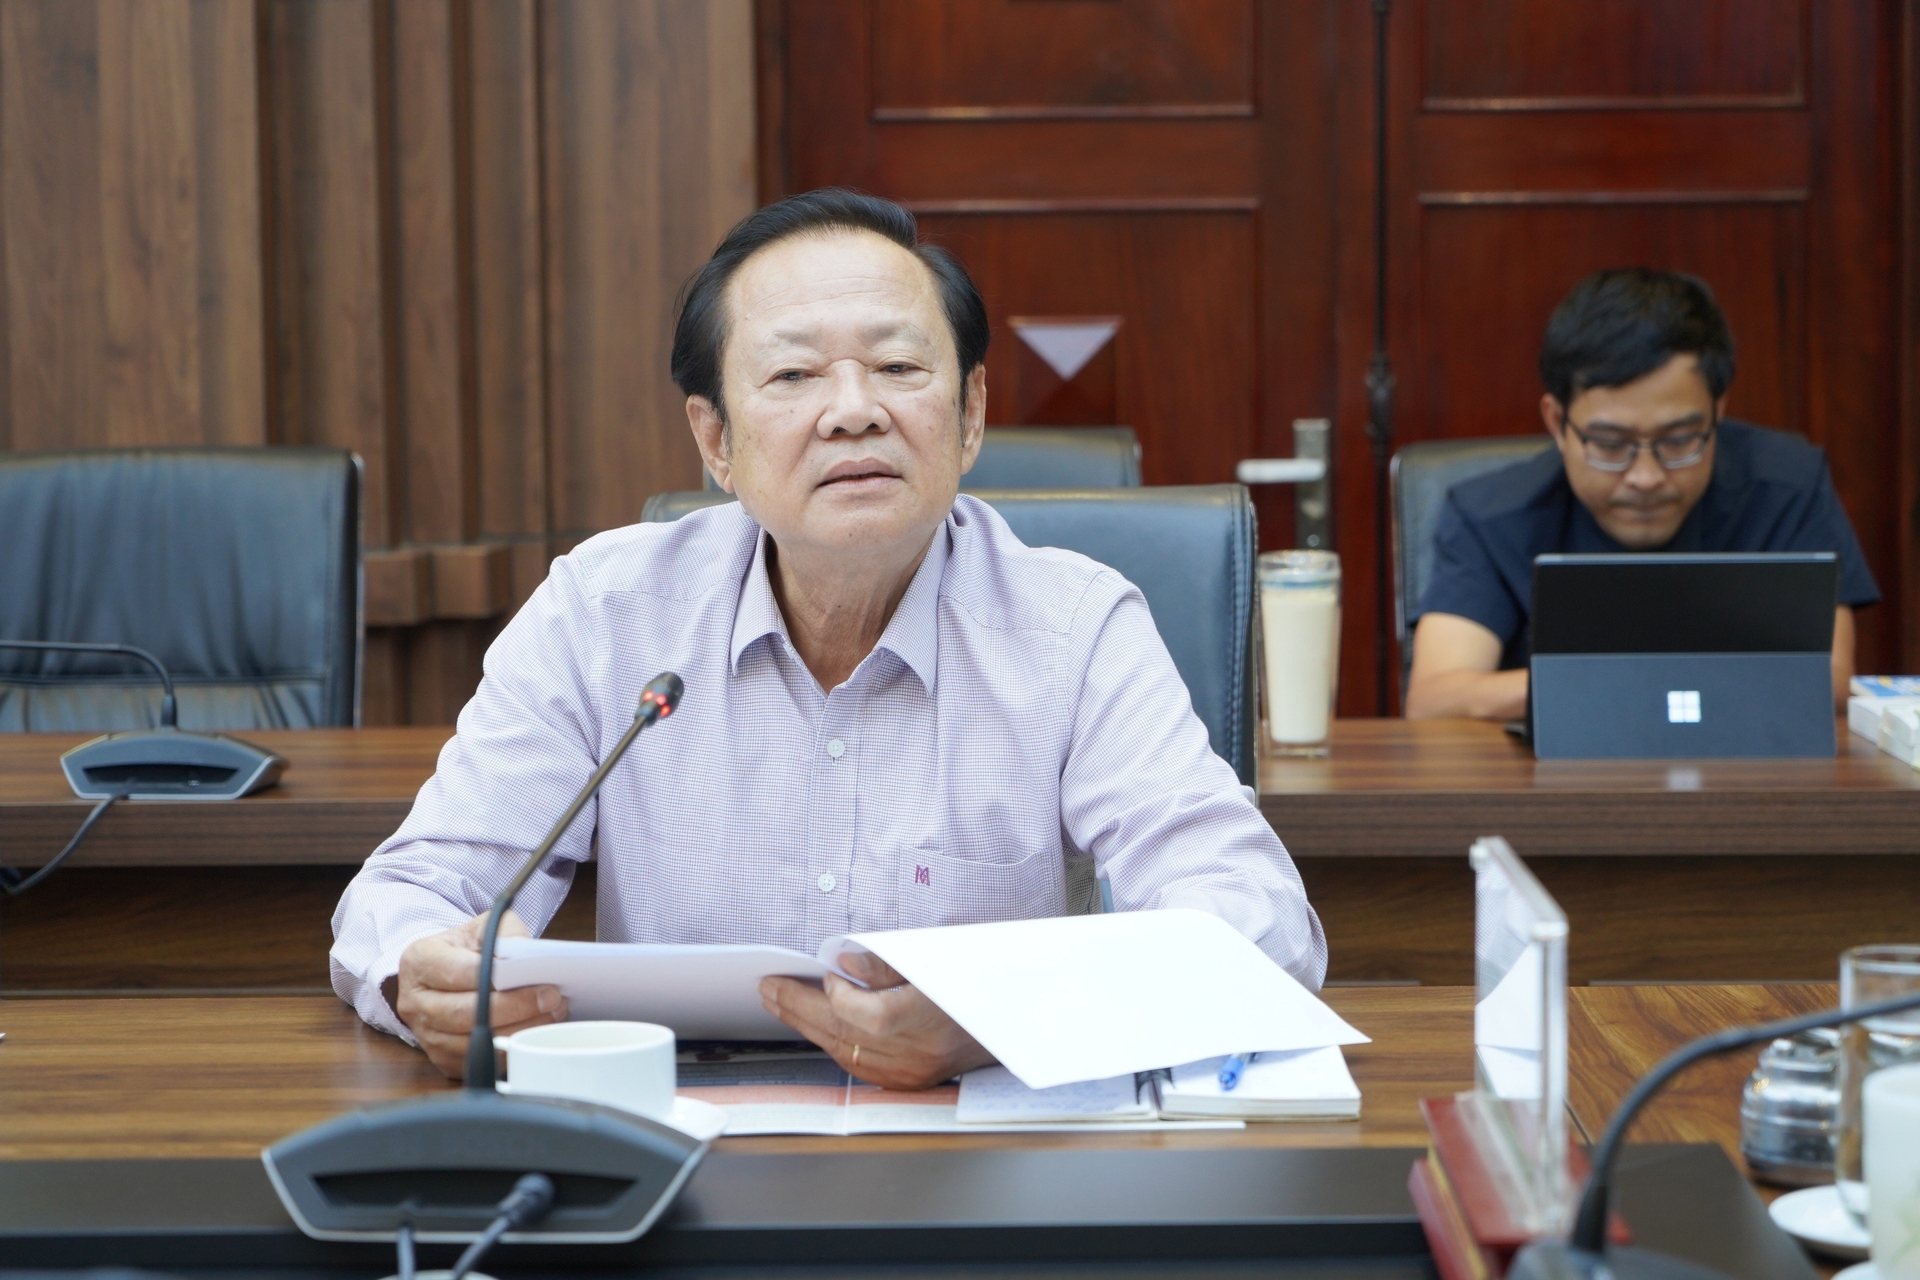 Ông Nguyễn Việt Thắng, Chủ tịch Hội Nghề cá Việt Nam cho biết, hiện nay ngành thủy sản đang đối mặt với nhiều khó khăn cả trong sản xuất và xuất khẩu. Ảnh: Hồng Thắm.